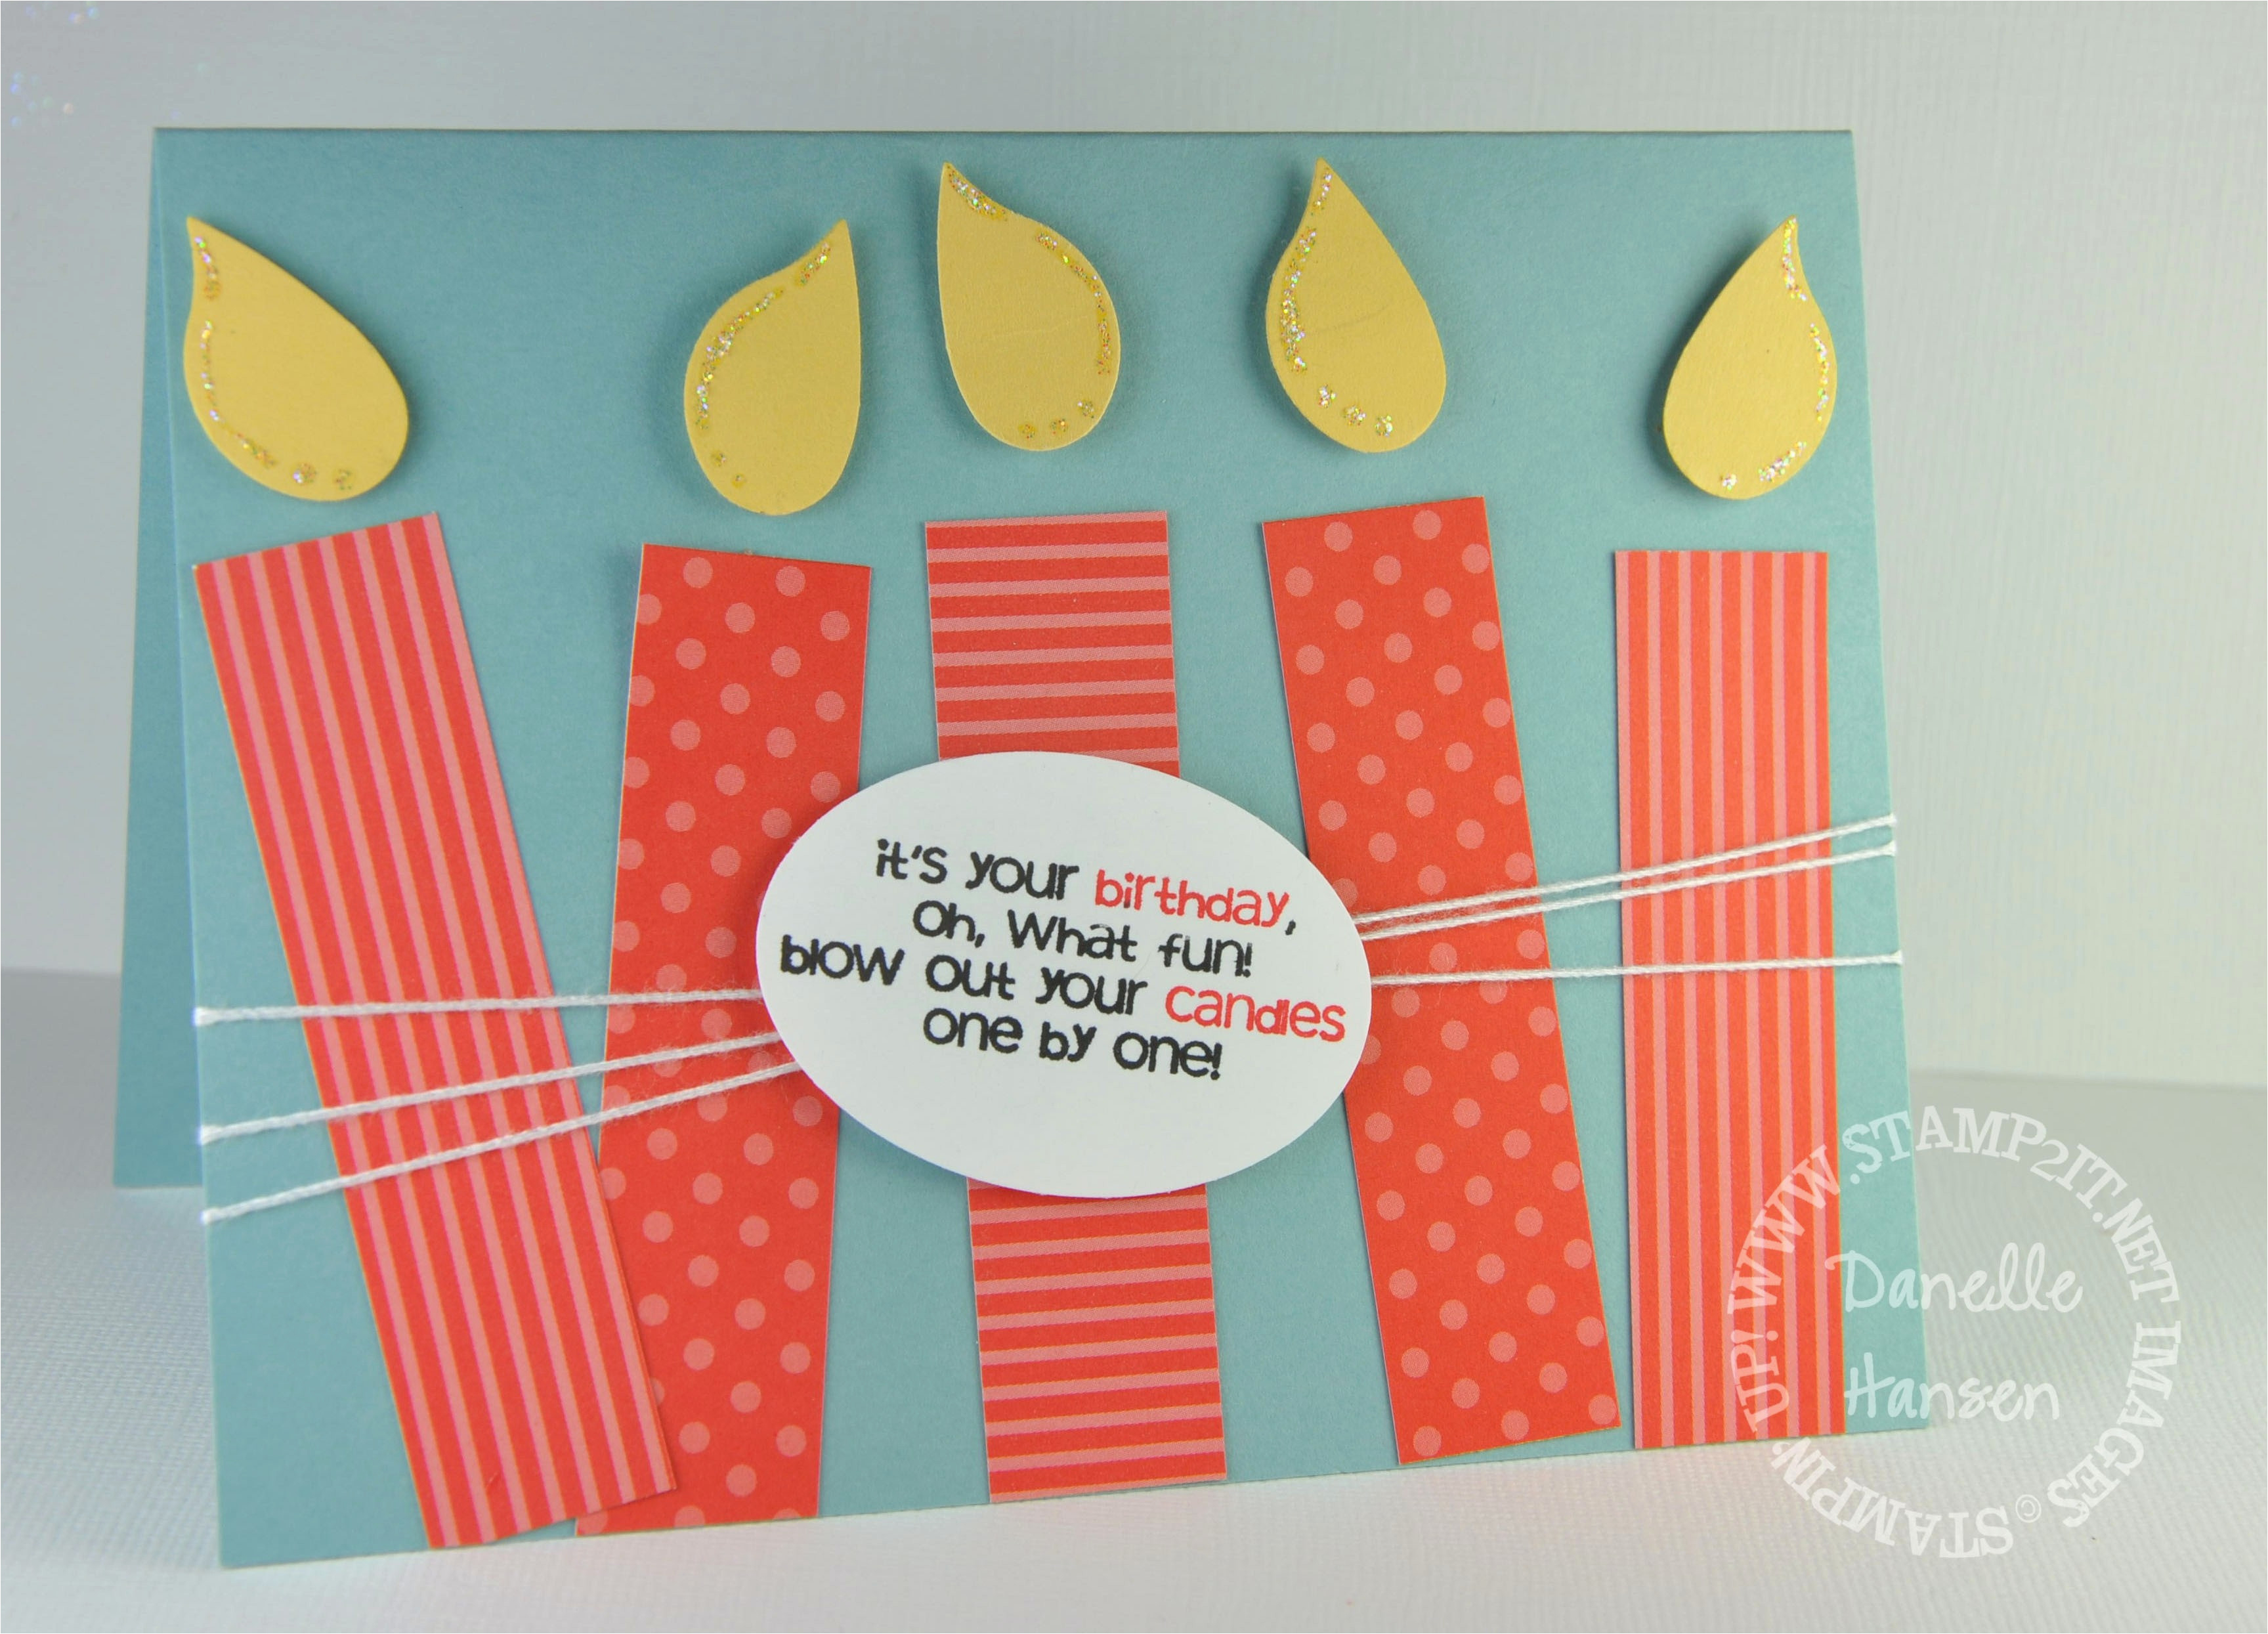 Creative Handmade Birthday Card Ideas Diy Birthday Cards For Husband Creative Handmade Birthday Card Ideas